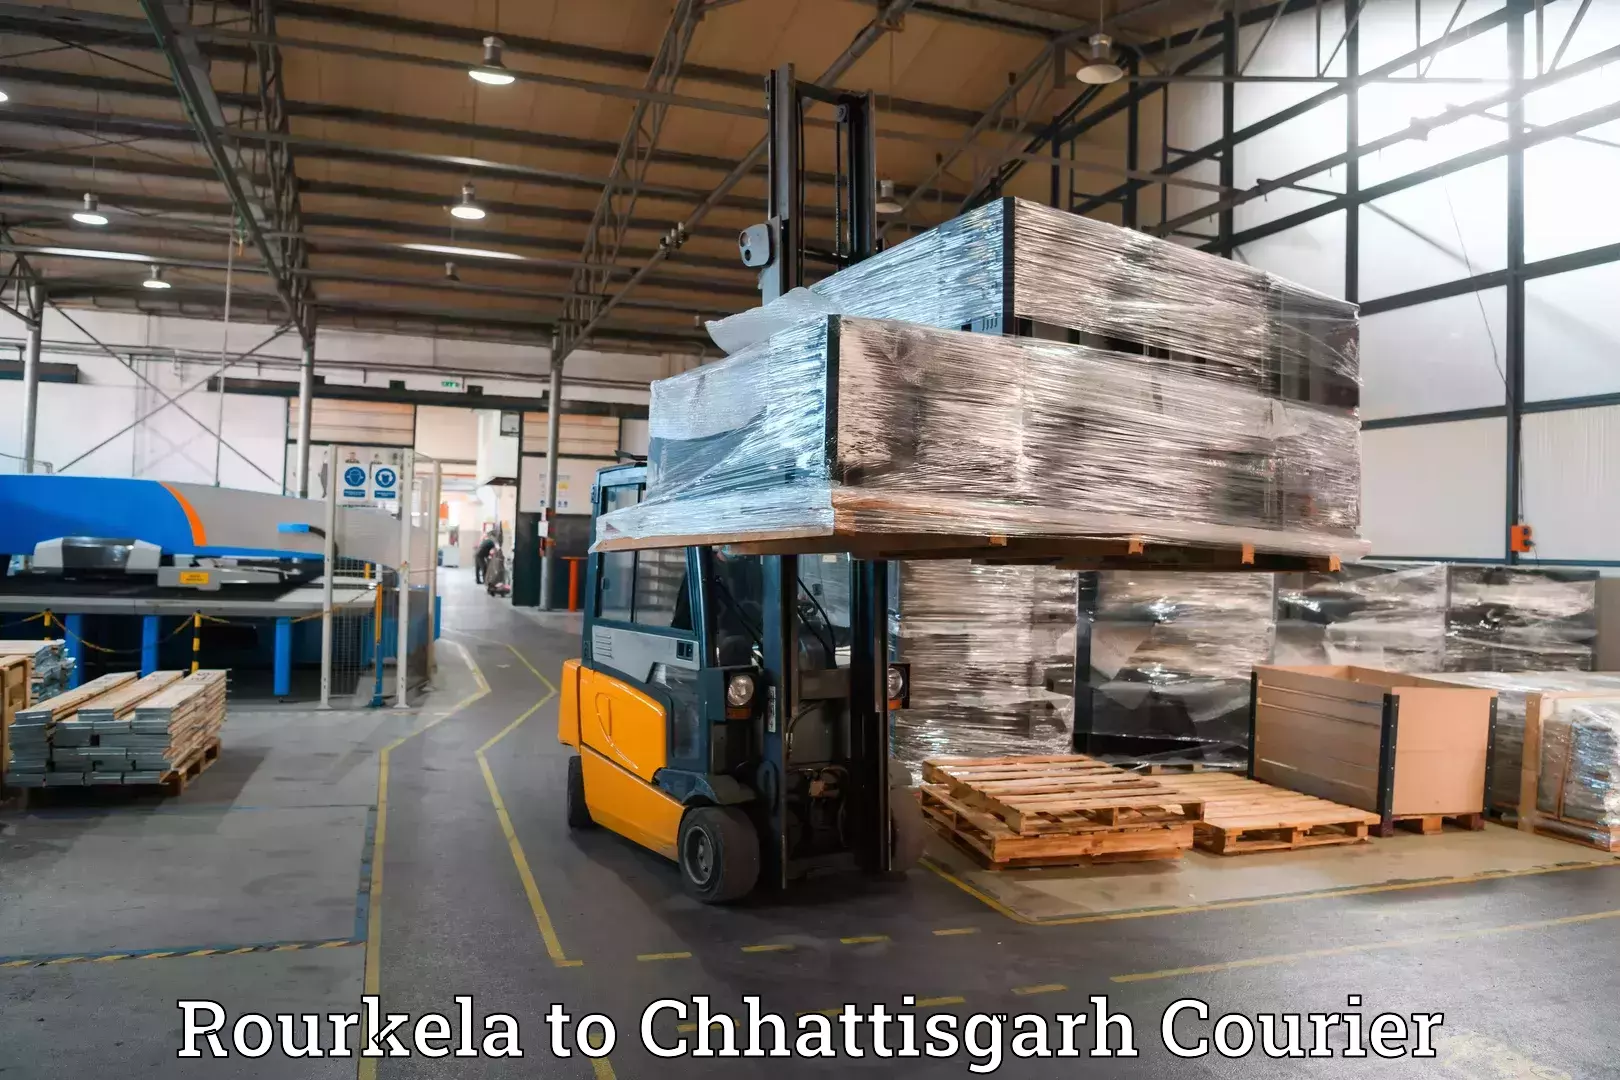 Luggage transport company Rourkela to Sukma